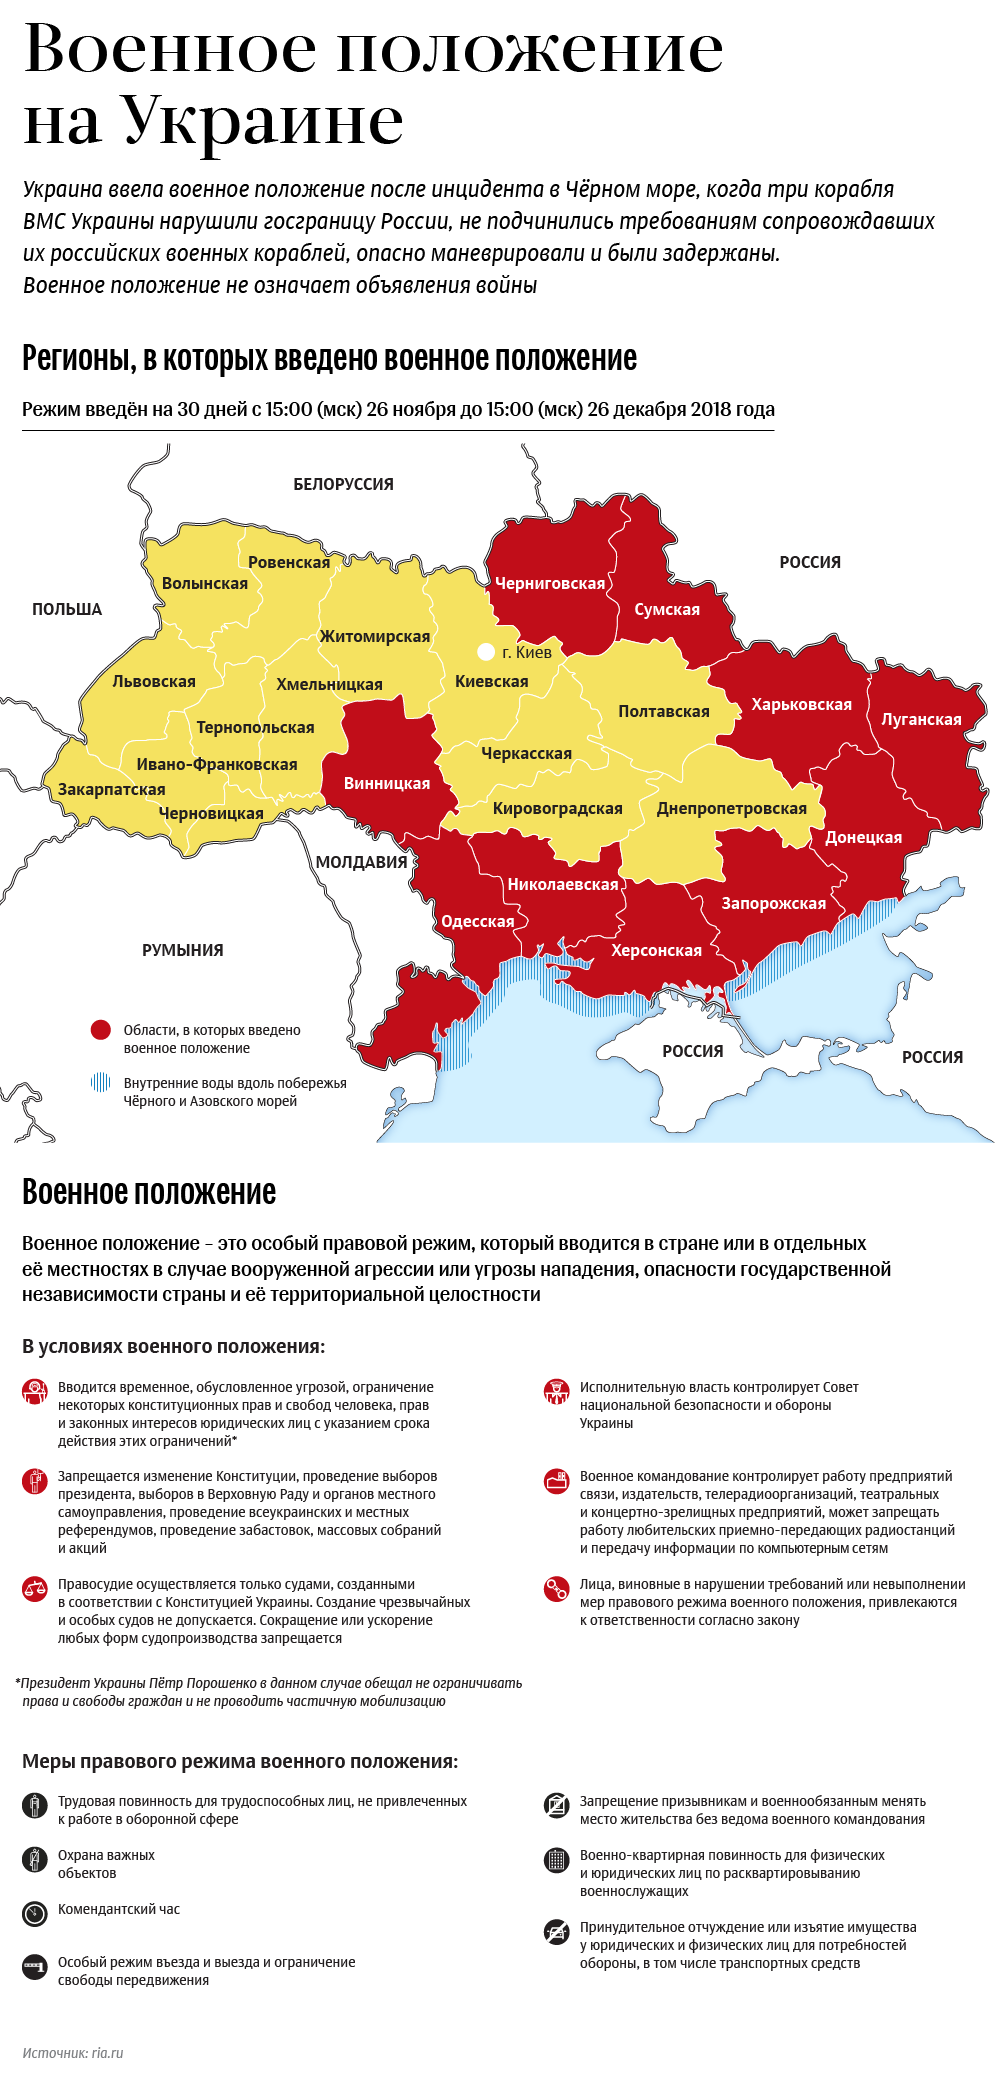 Военное положение на Украине